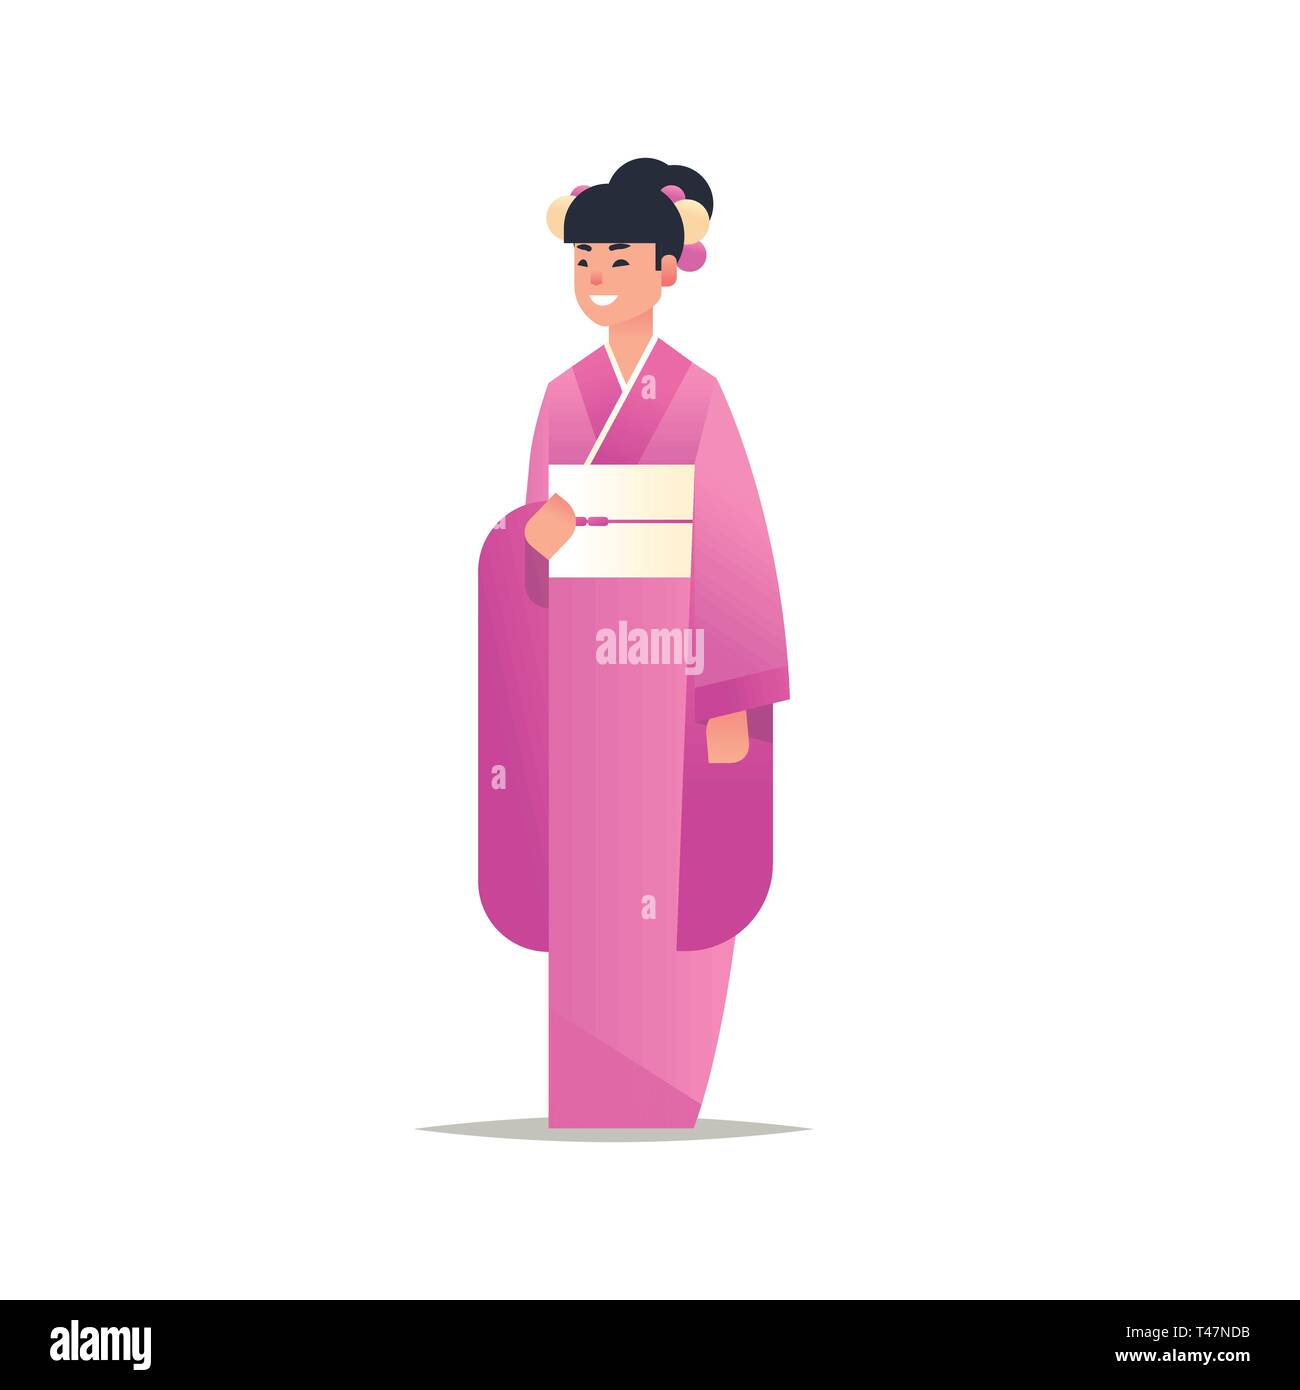 Junge asiatische Mädchen tragen traditionelle Kleidung attraktive Frau in nationalen alten Kostüm ständigen Stellen chinesische oder japanische weibliche Comicfigur Stock Vektor